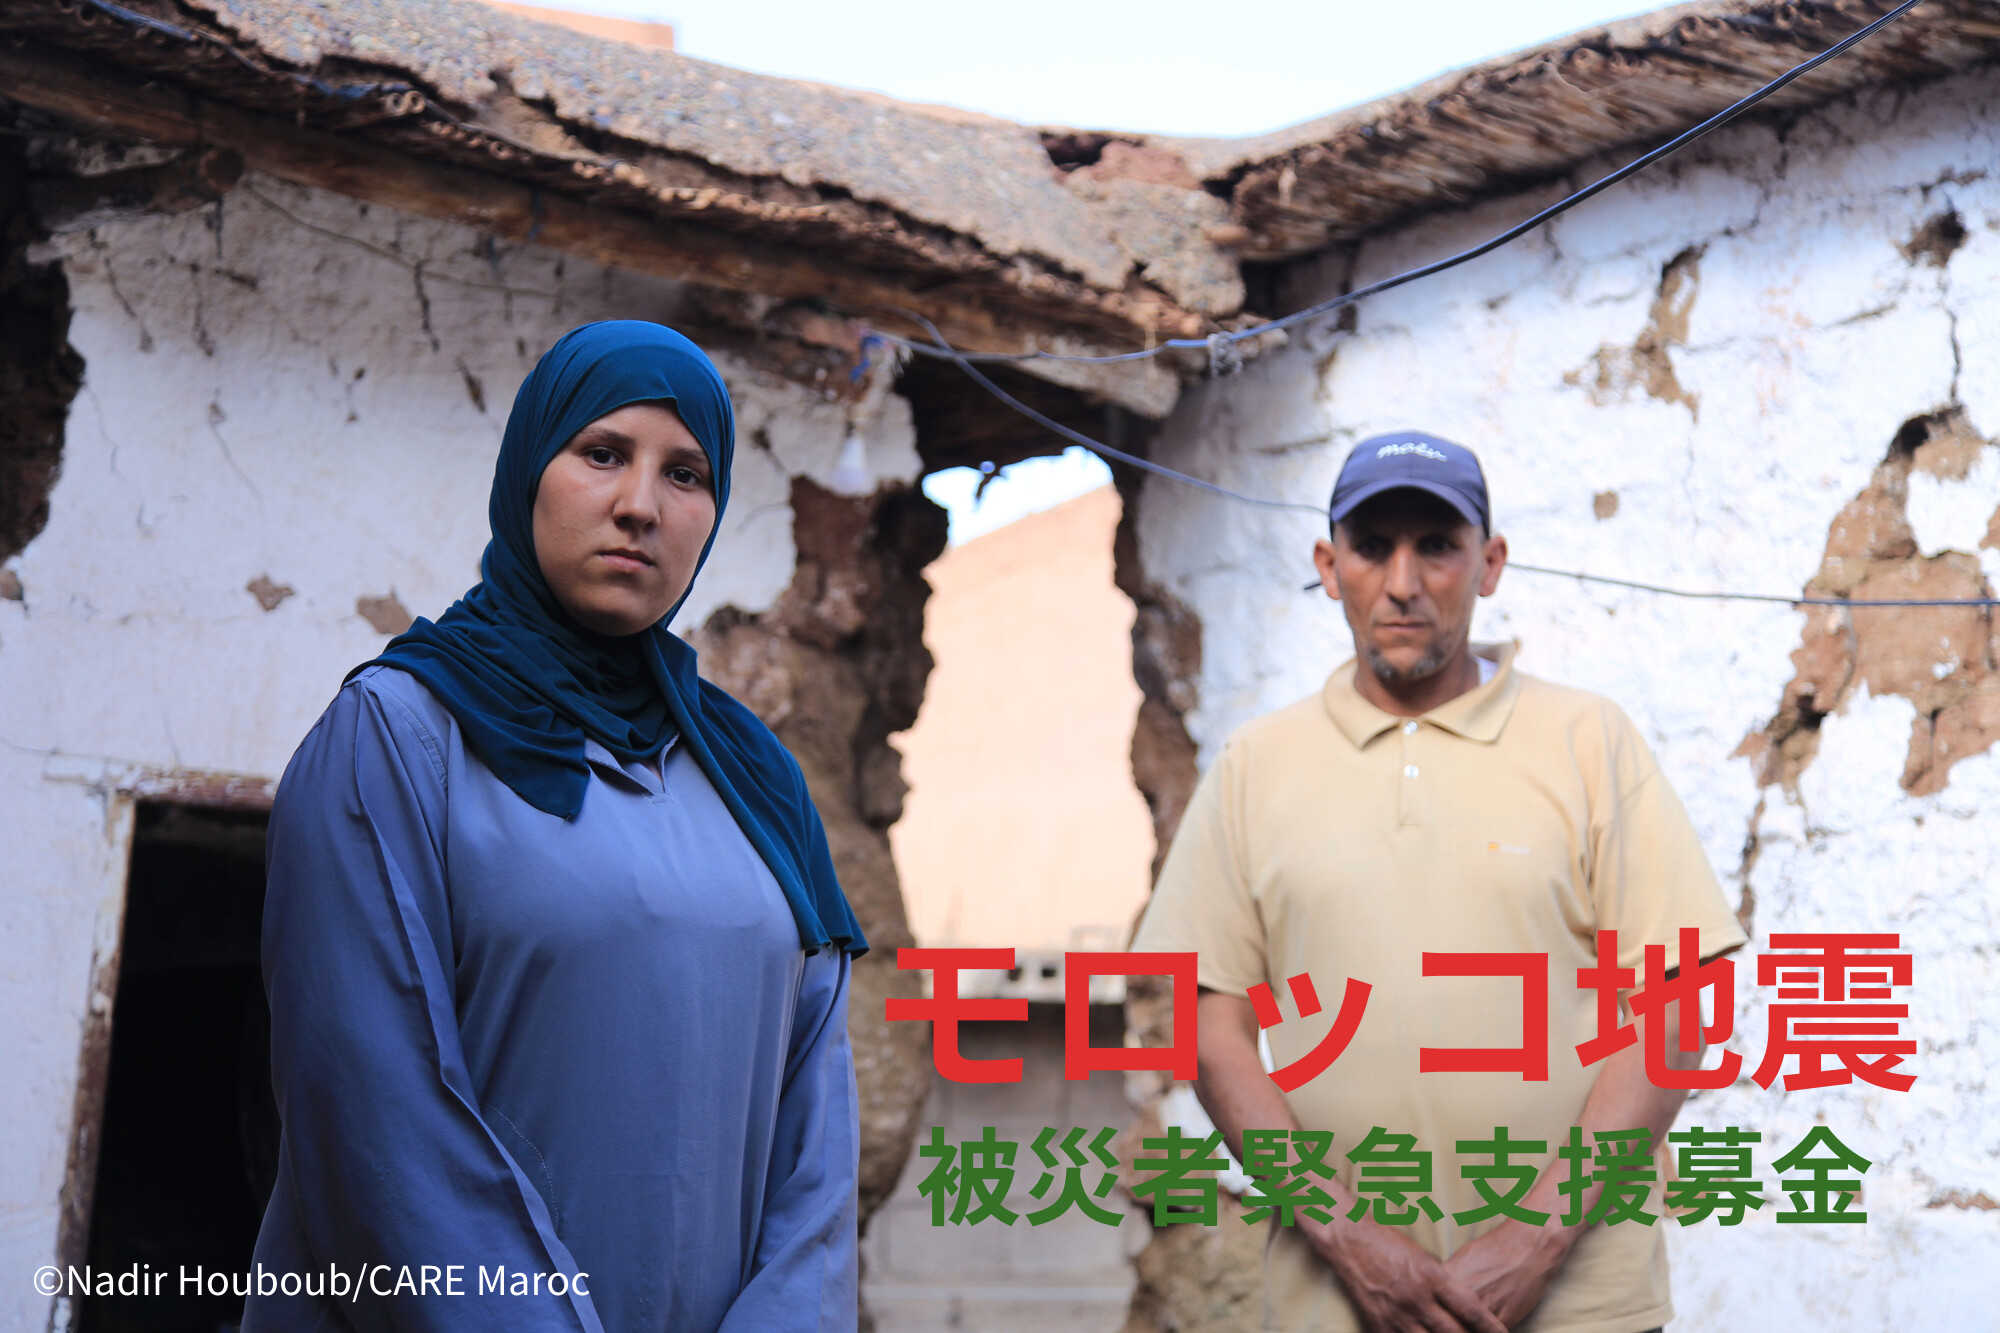 「モロッコ地震被災者緊急支援募金」へのお願い